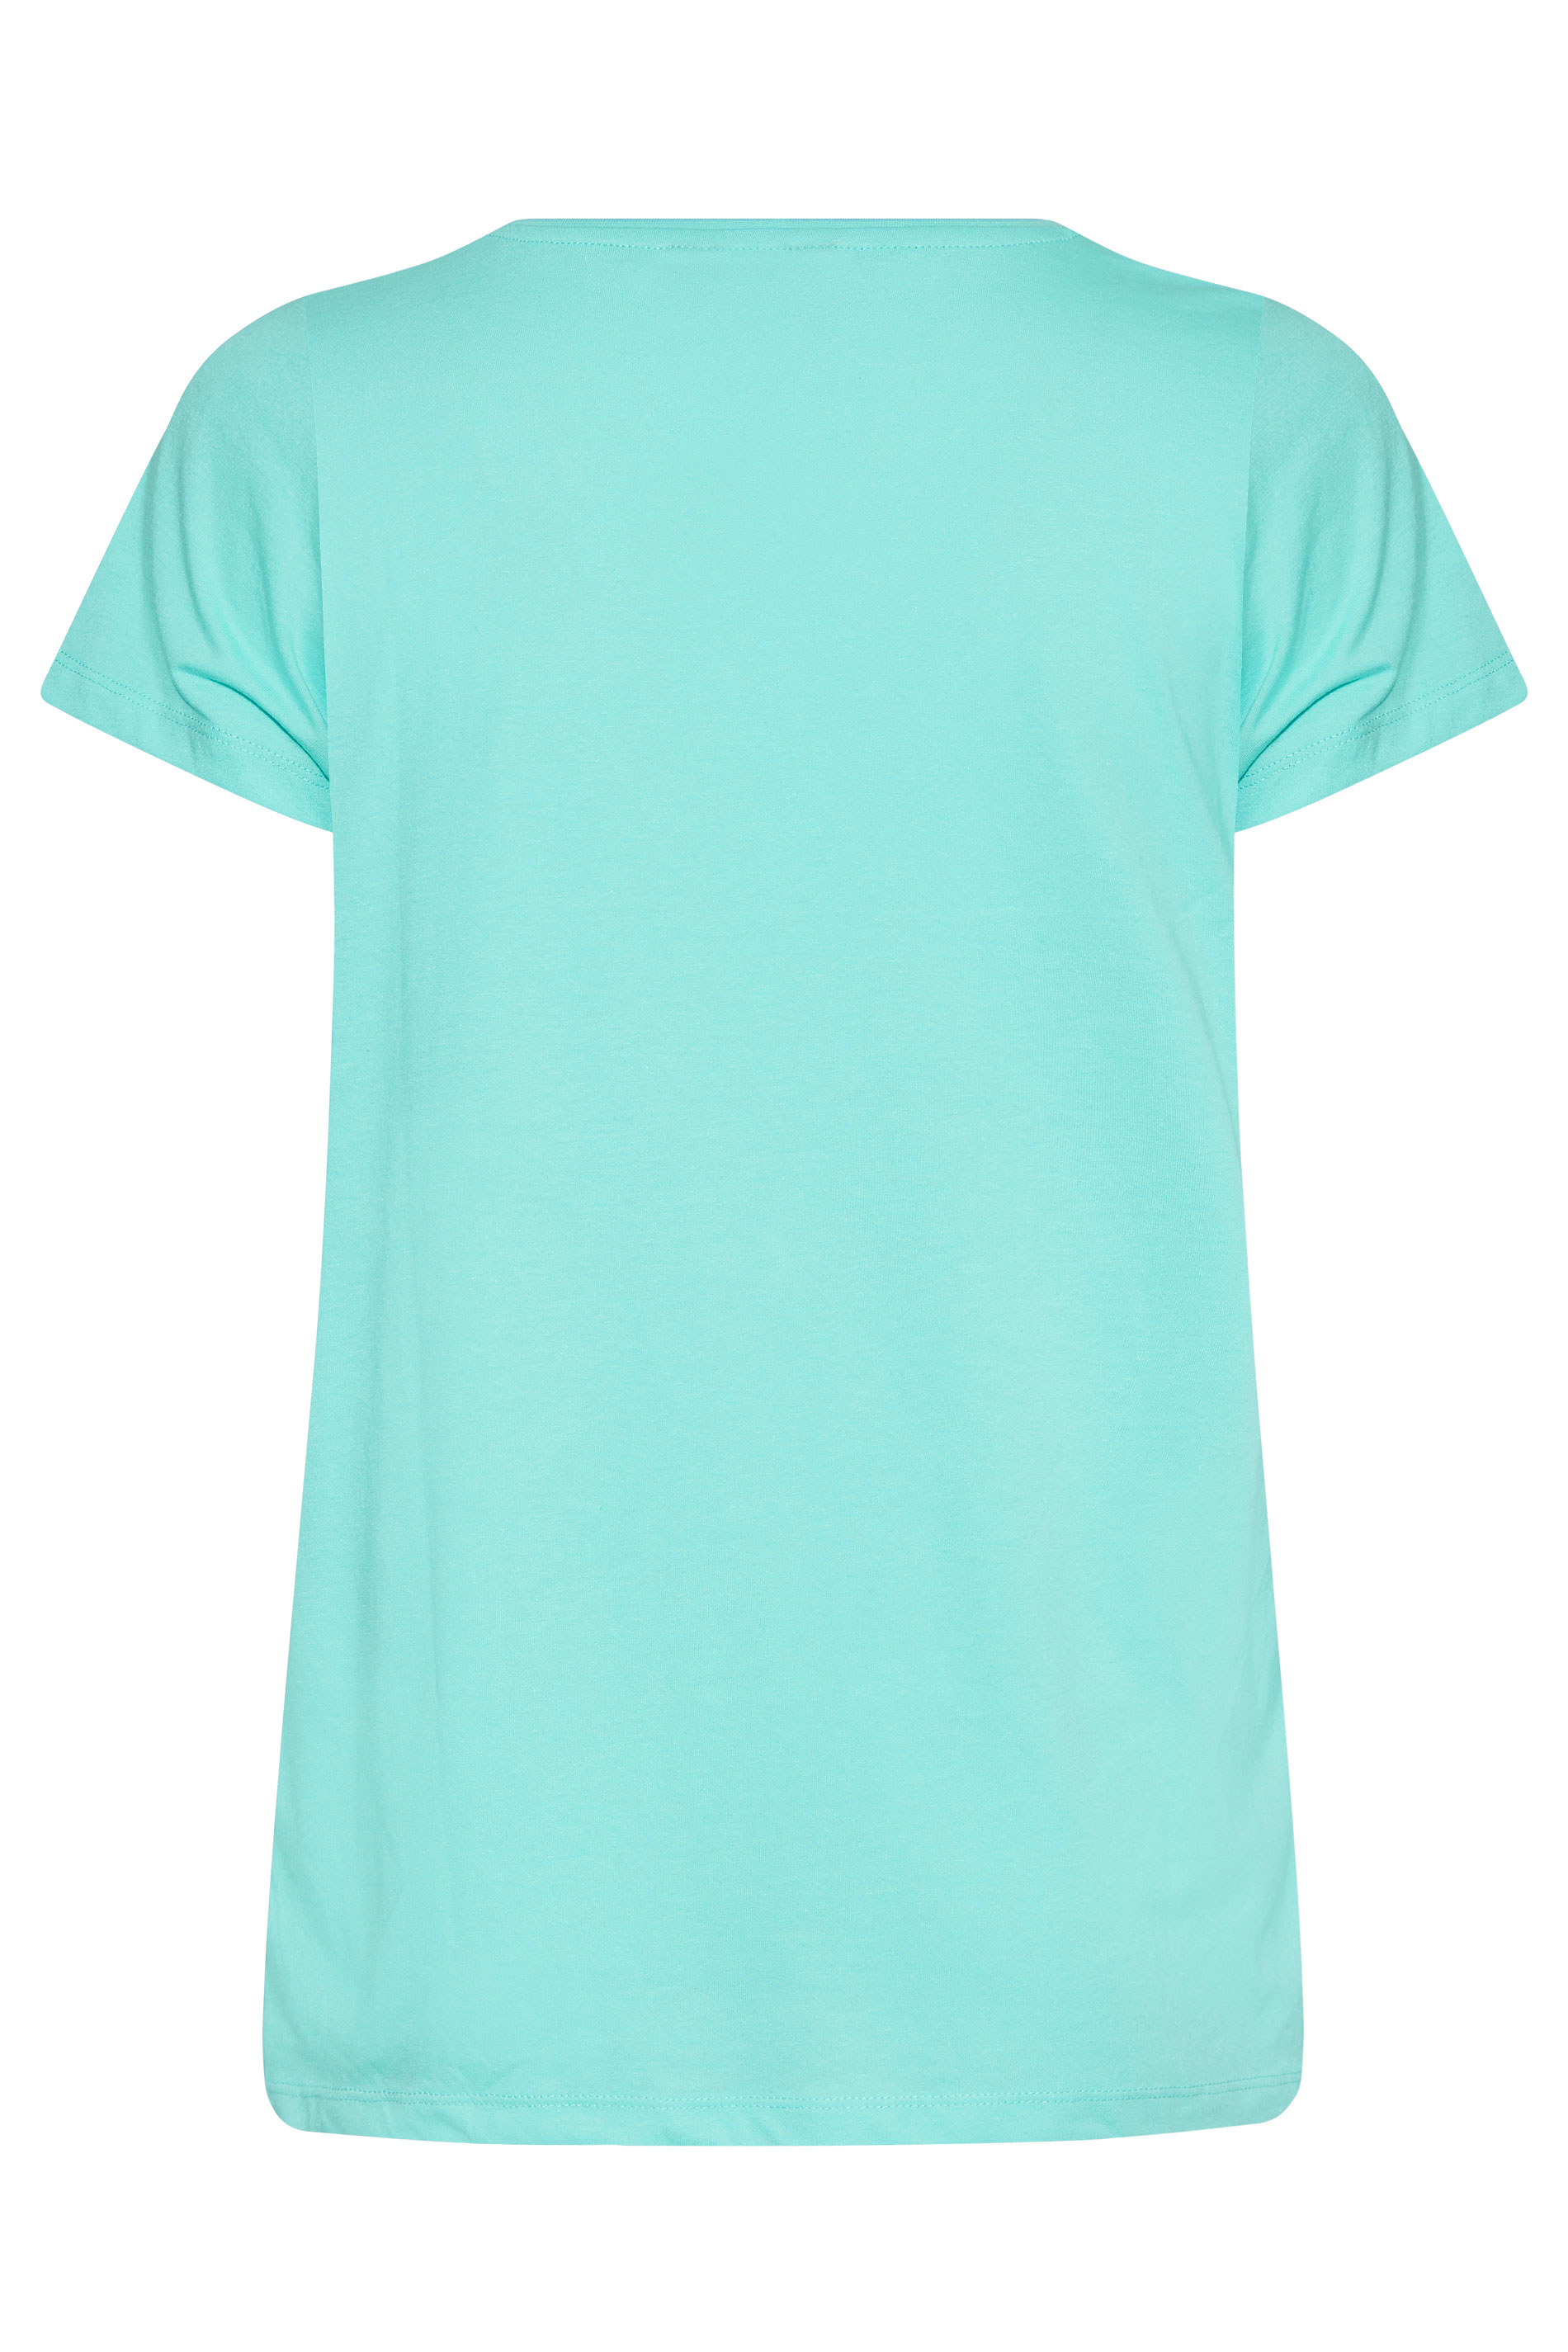 Grande taille  Tops Grande taille  T-Shirts Basiques & Débardeurs | T-Shirt Bleu Clair en Jersey - BK83023